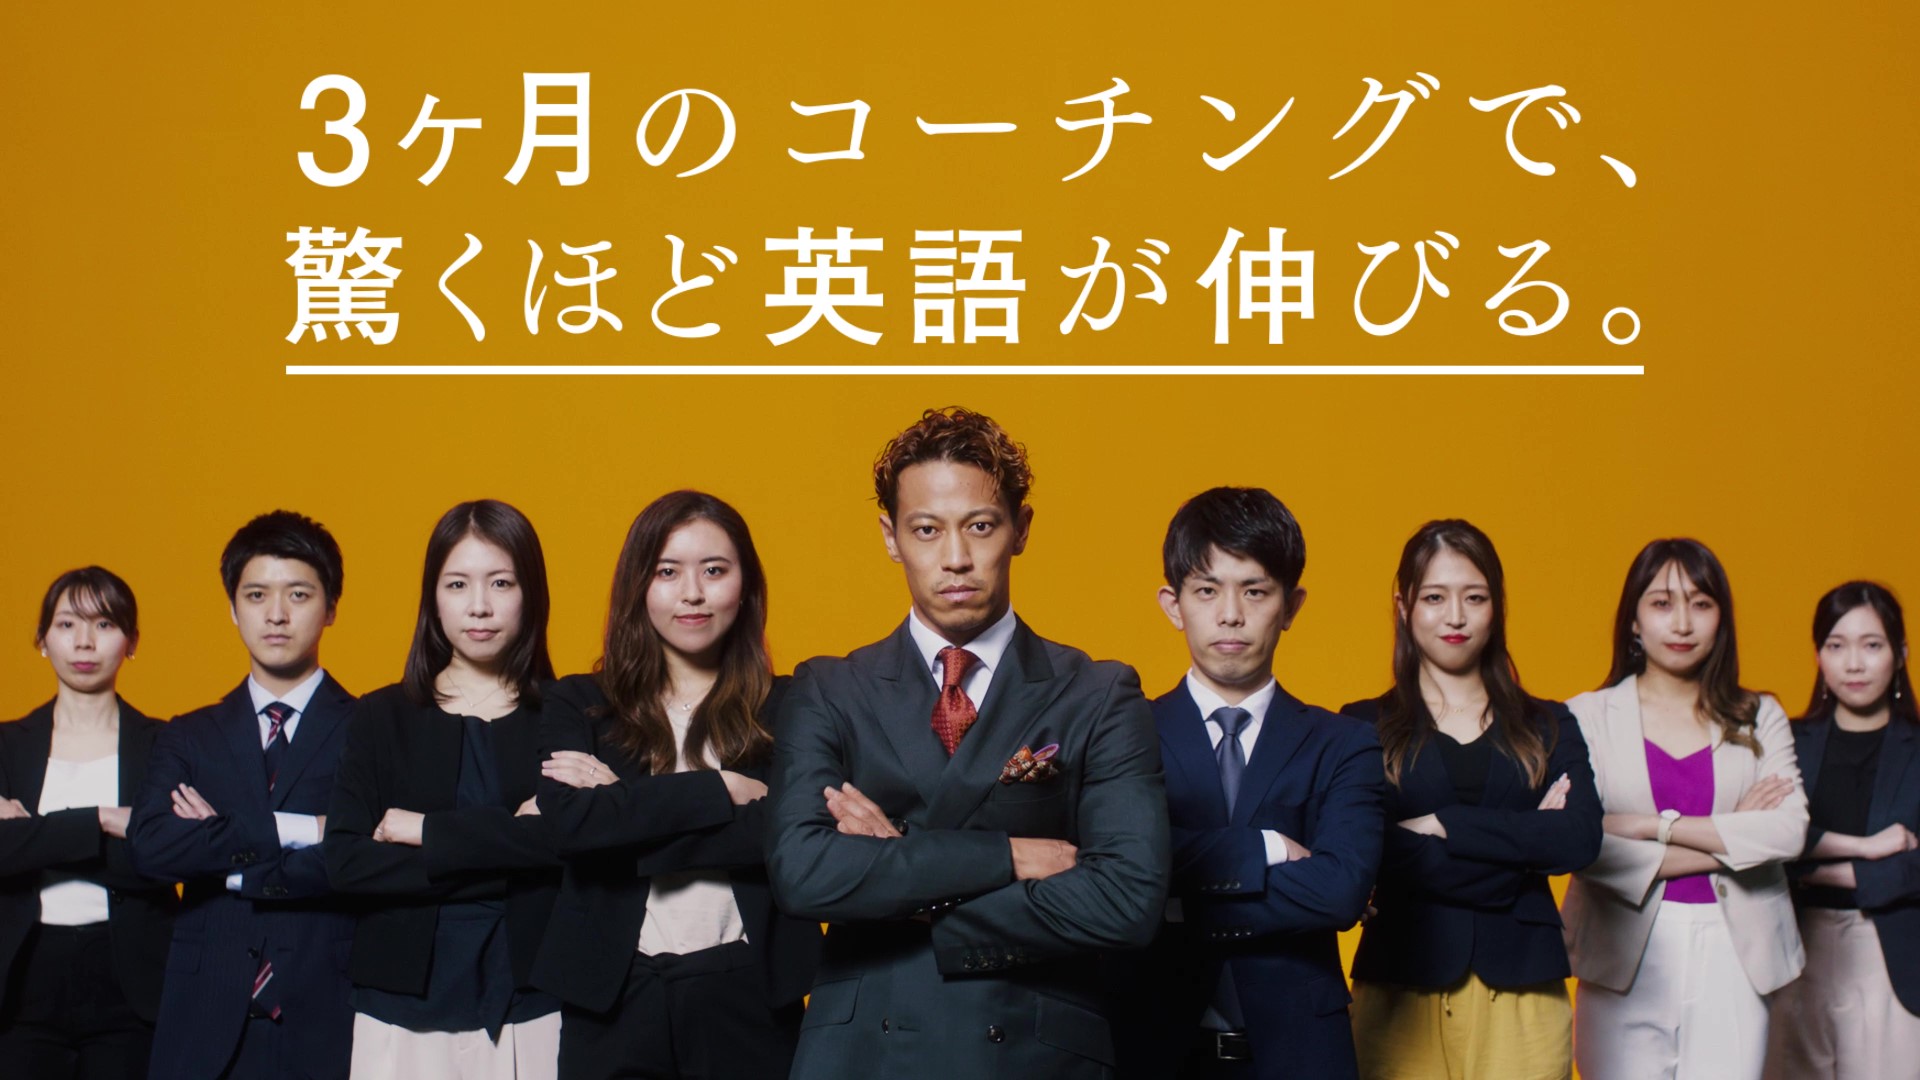 本田圭佑氏が英語コンサルタントに 英語コーチング プログリット Progrit が新cmを公開 株式会社プログリットのプレスリリース